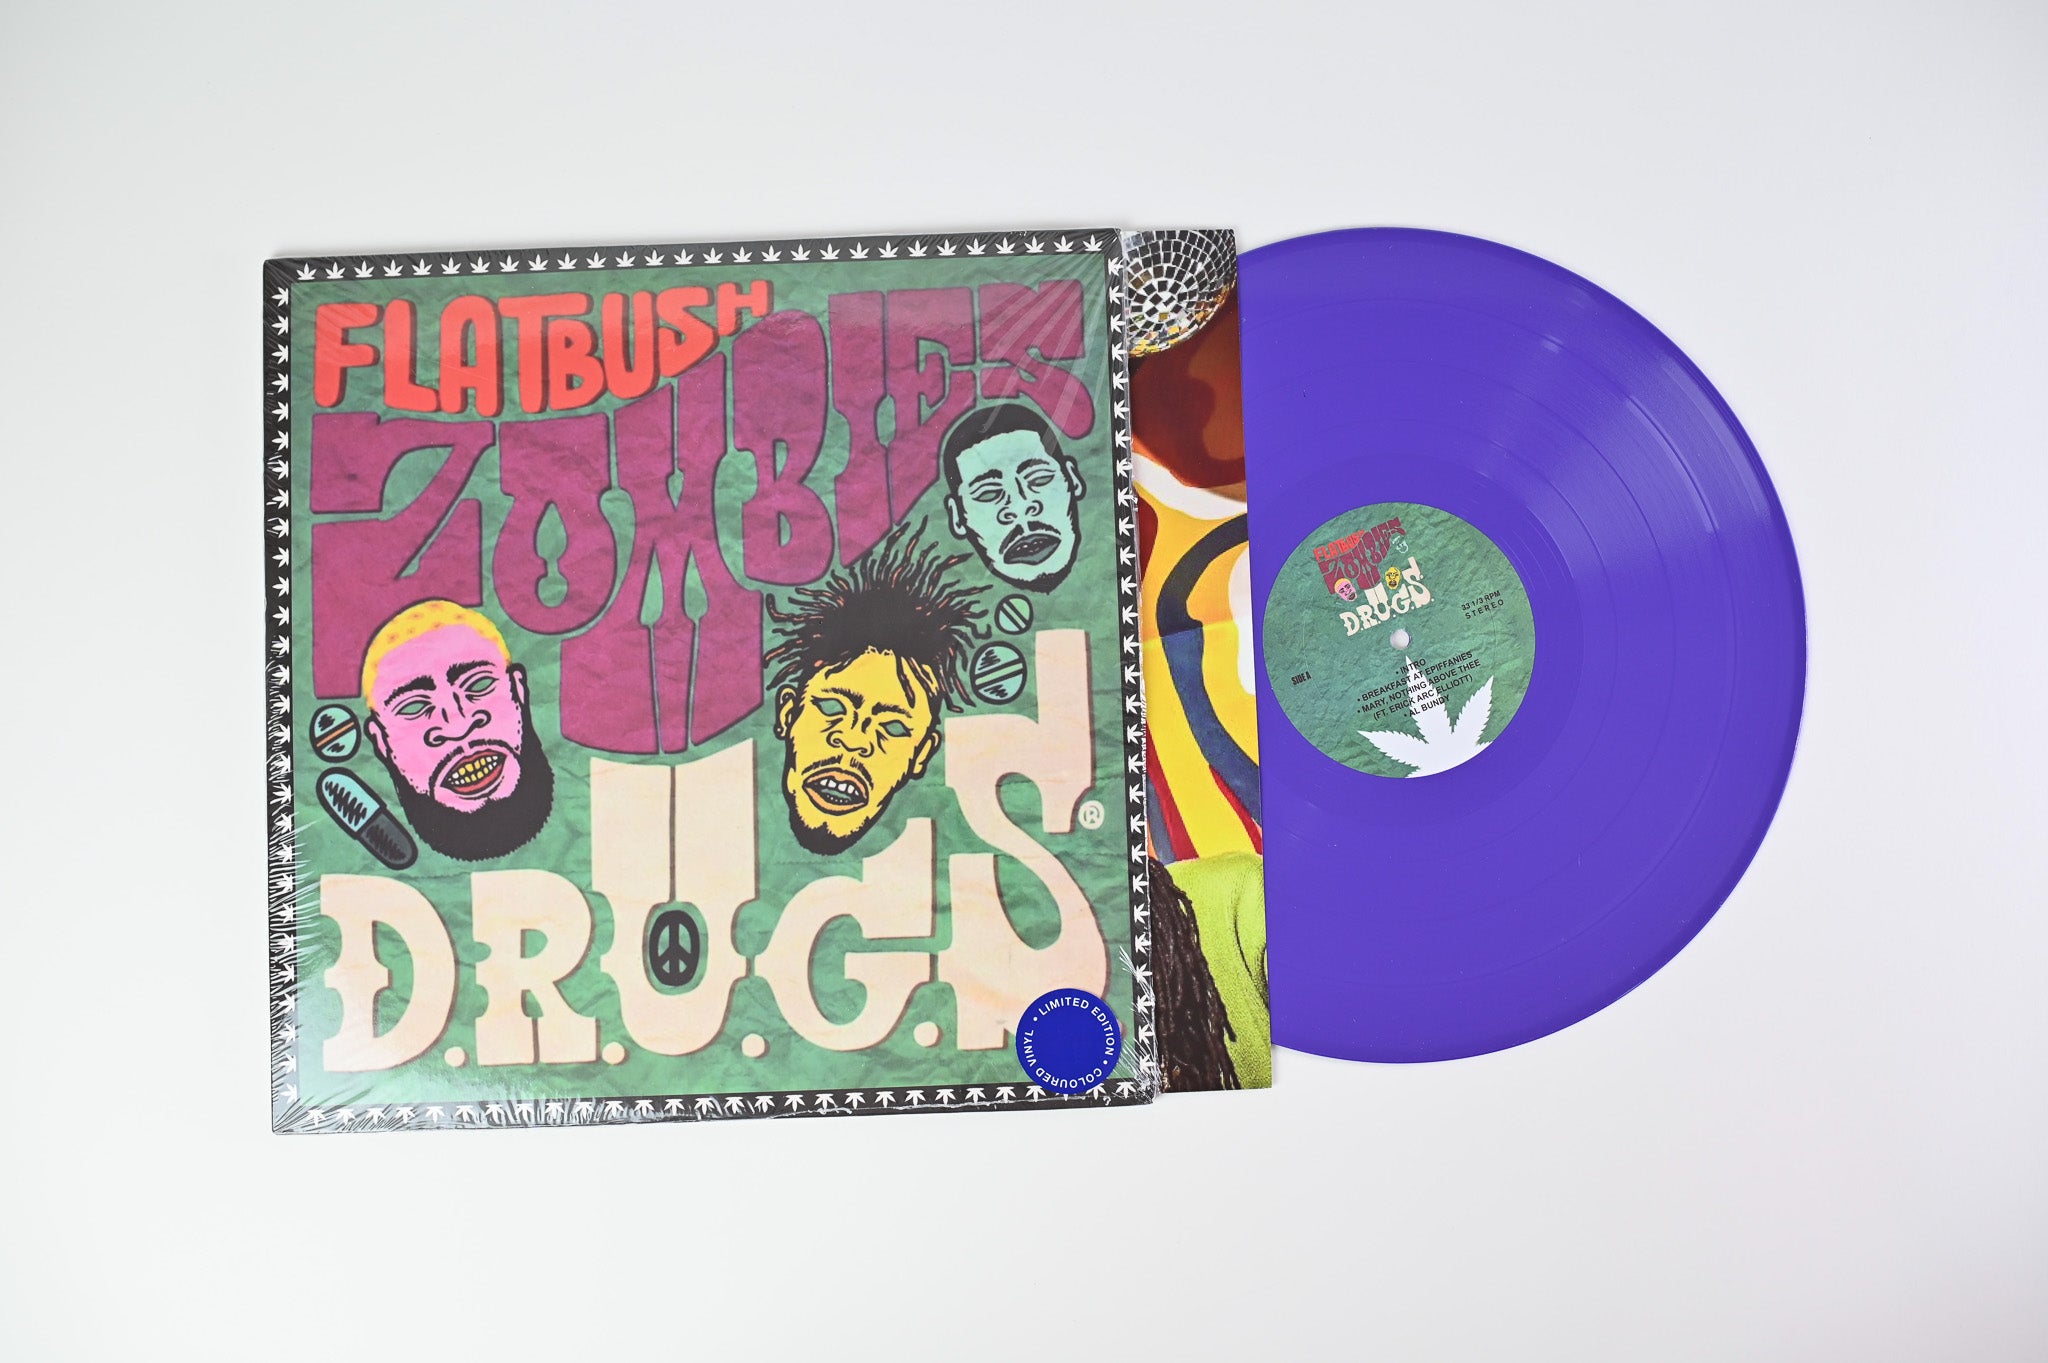 Flatbush Zombies - D.R.U.G.S. Unofficial Release on Purple Vinyl